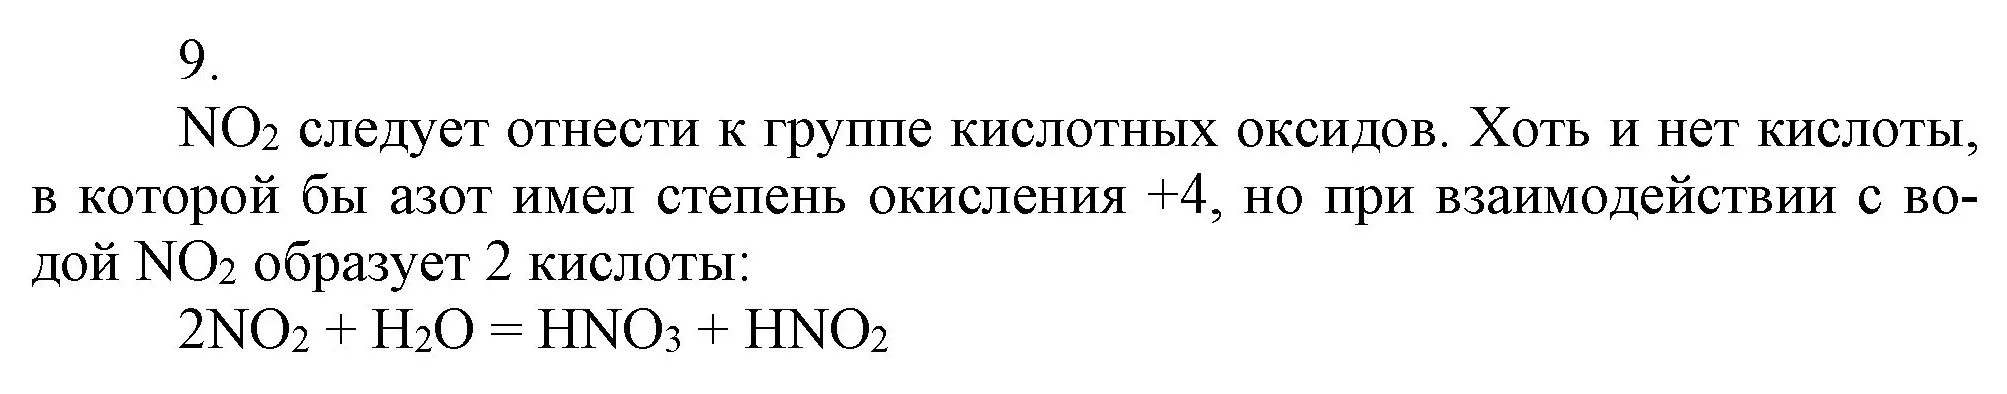 Решение номер 9 (страница 99) гдз по химии 9 класс Габриелян, Остроумов, учебник